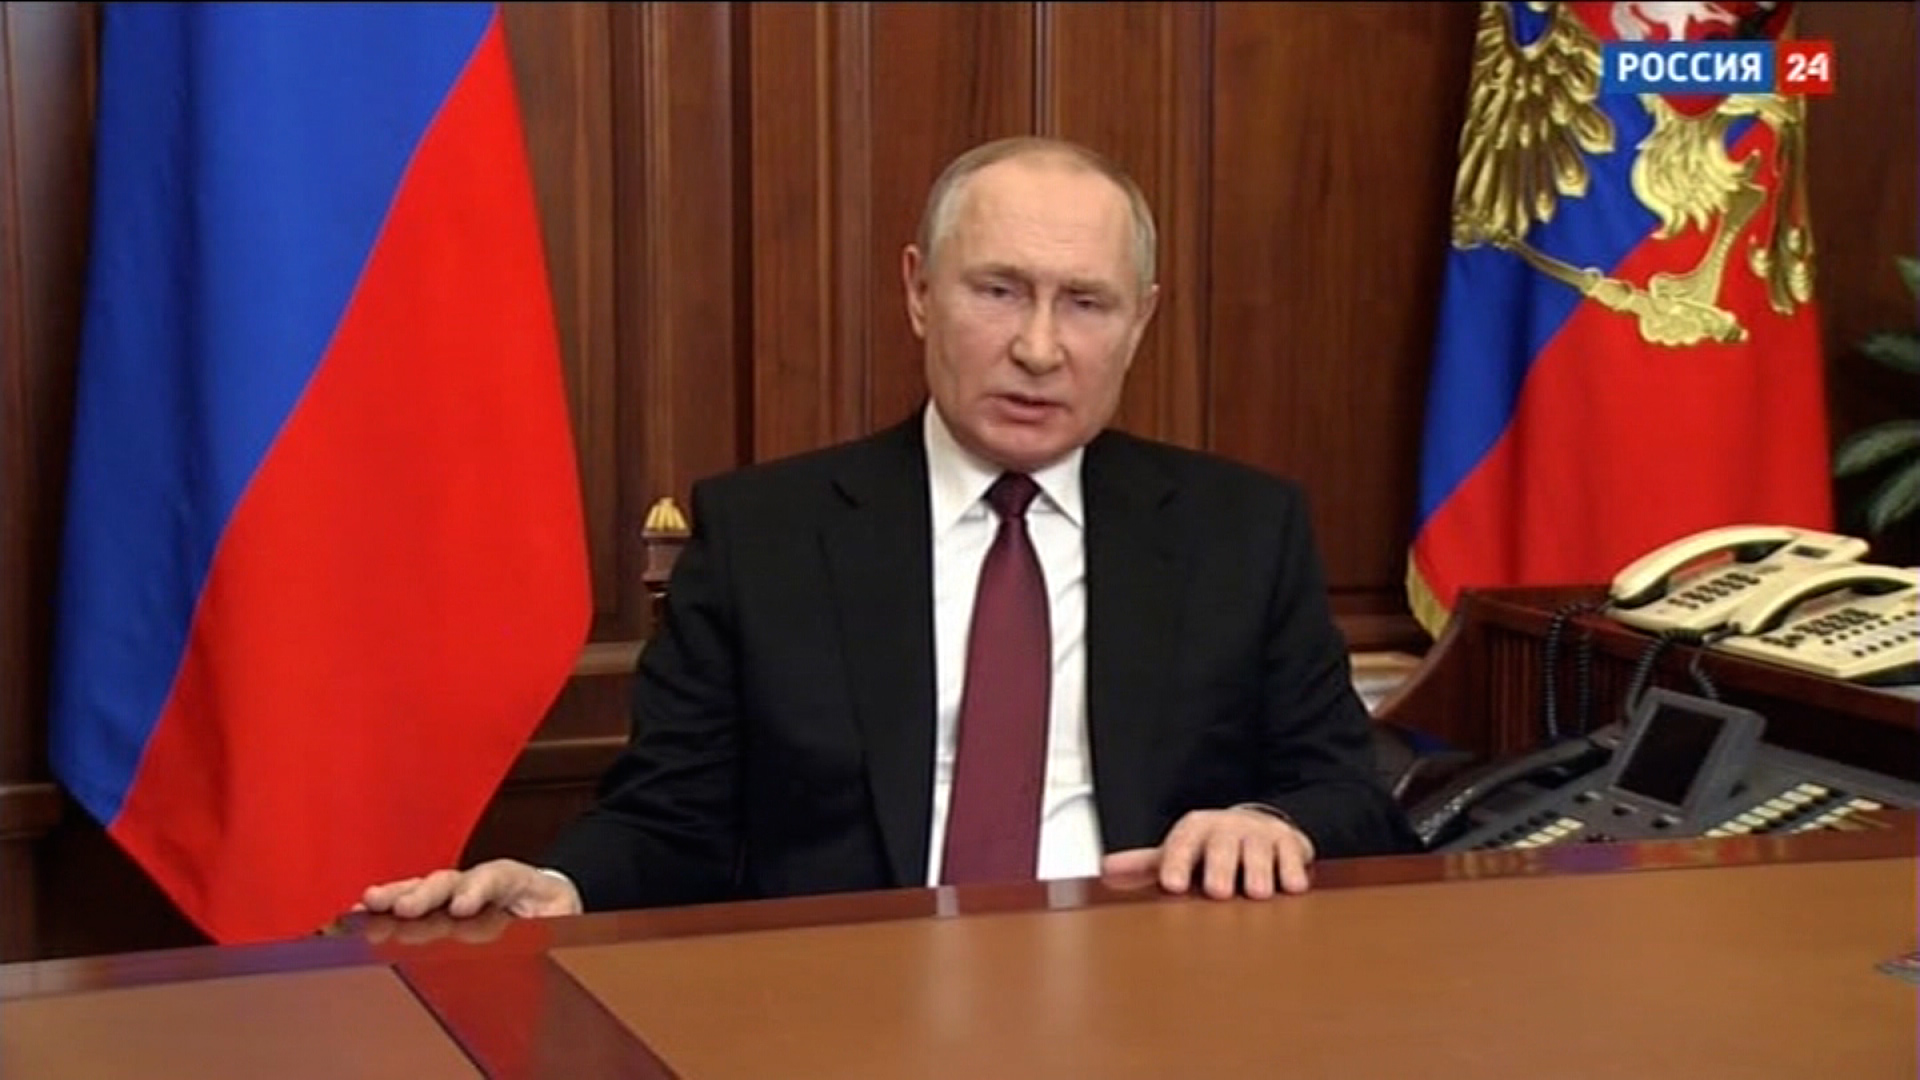 La televisione di stato russa ha trasmesso un discorso del presidente Vladimir Putin il 24 febbraio.